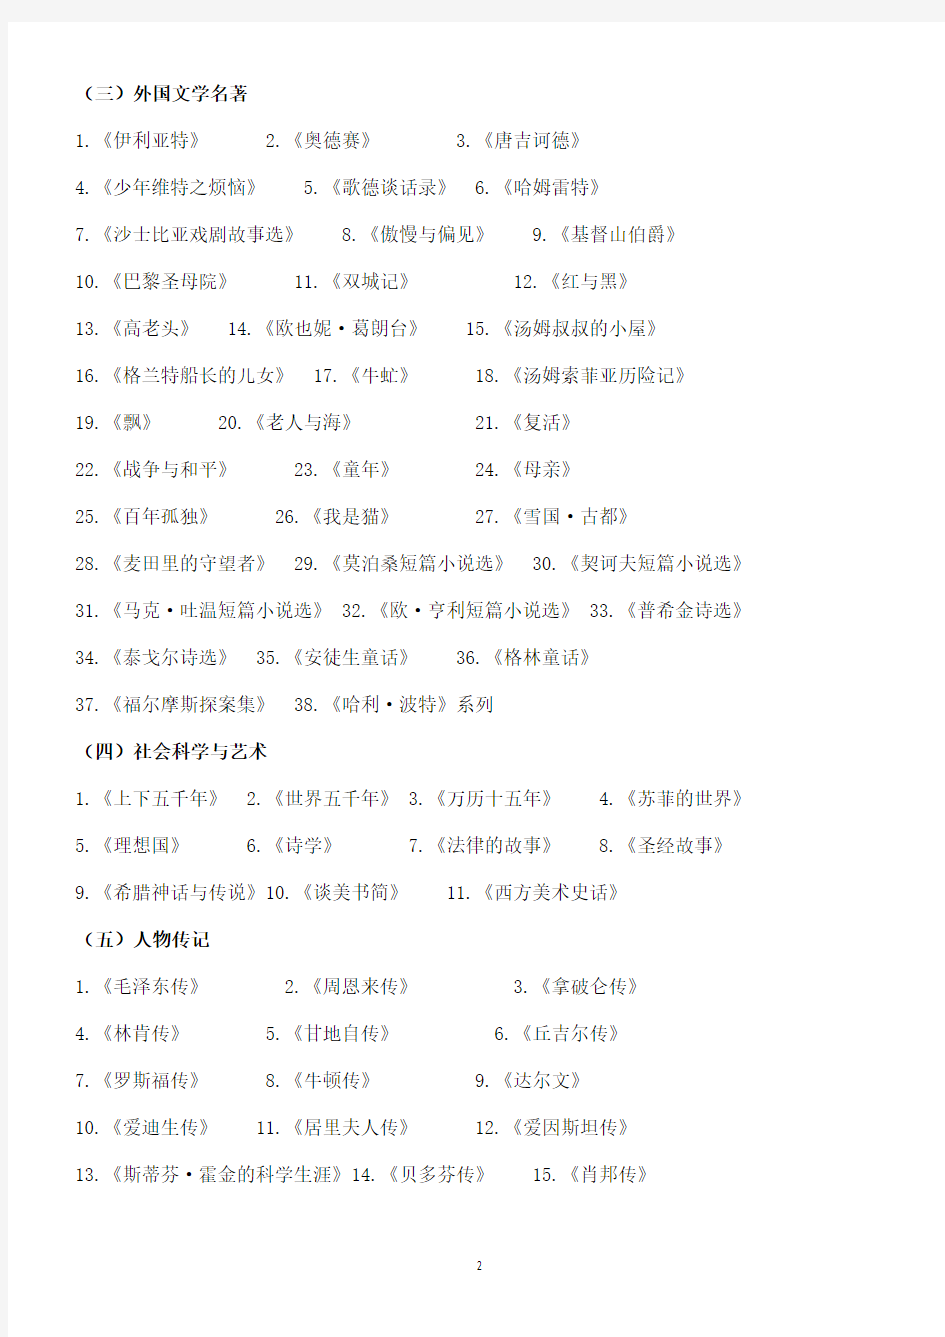 (完整)初中语文新课标名著必读书目总汇